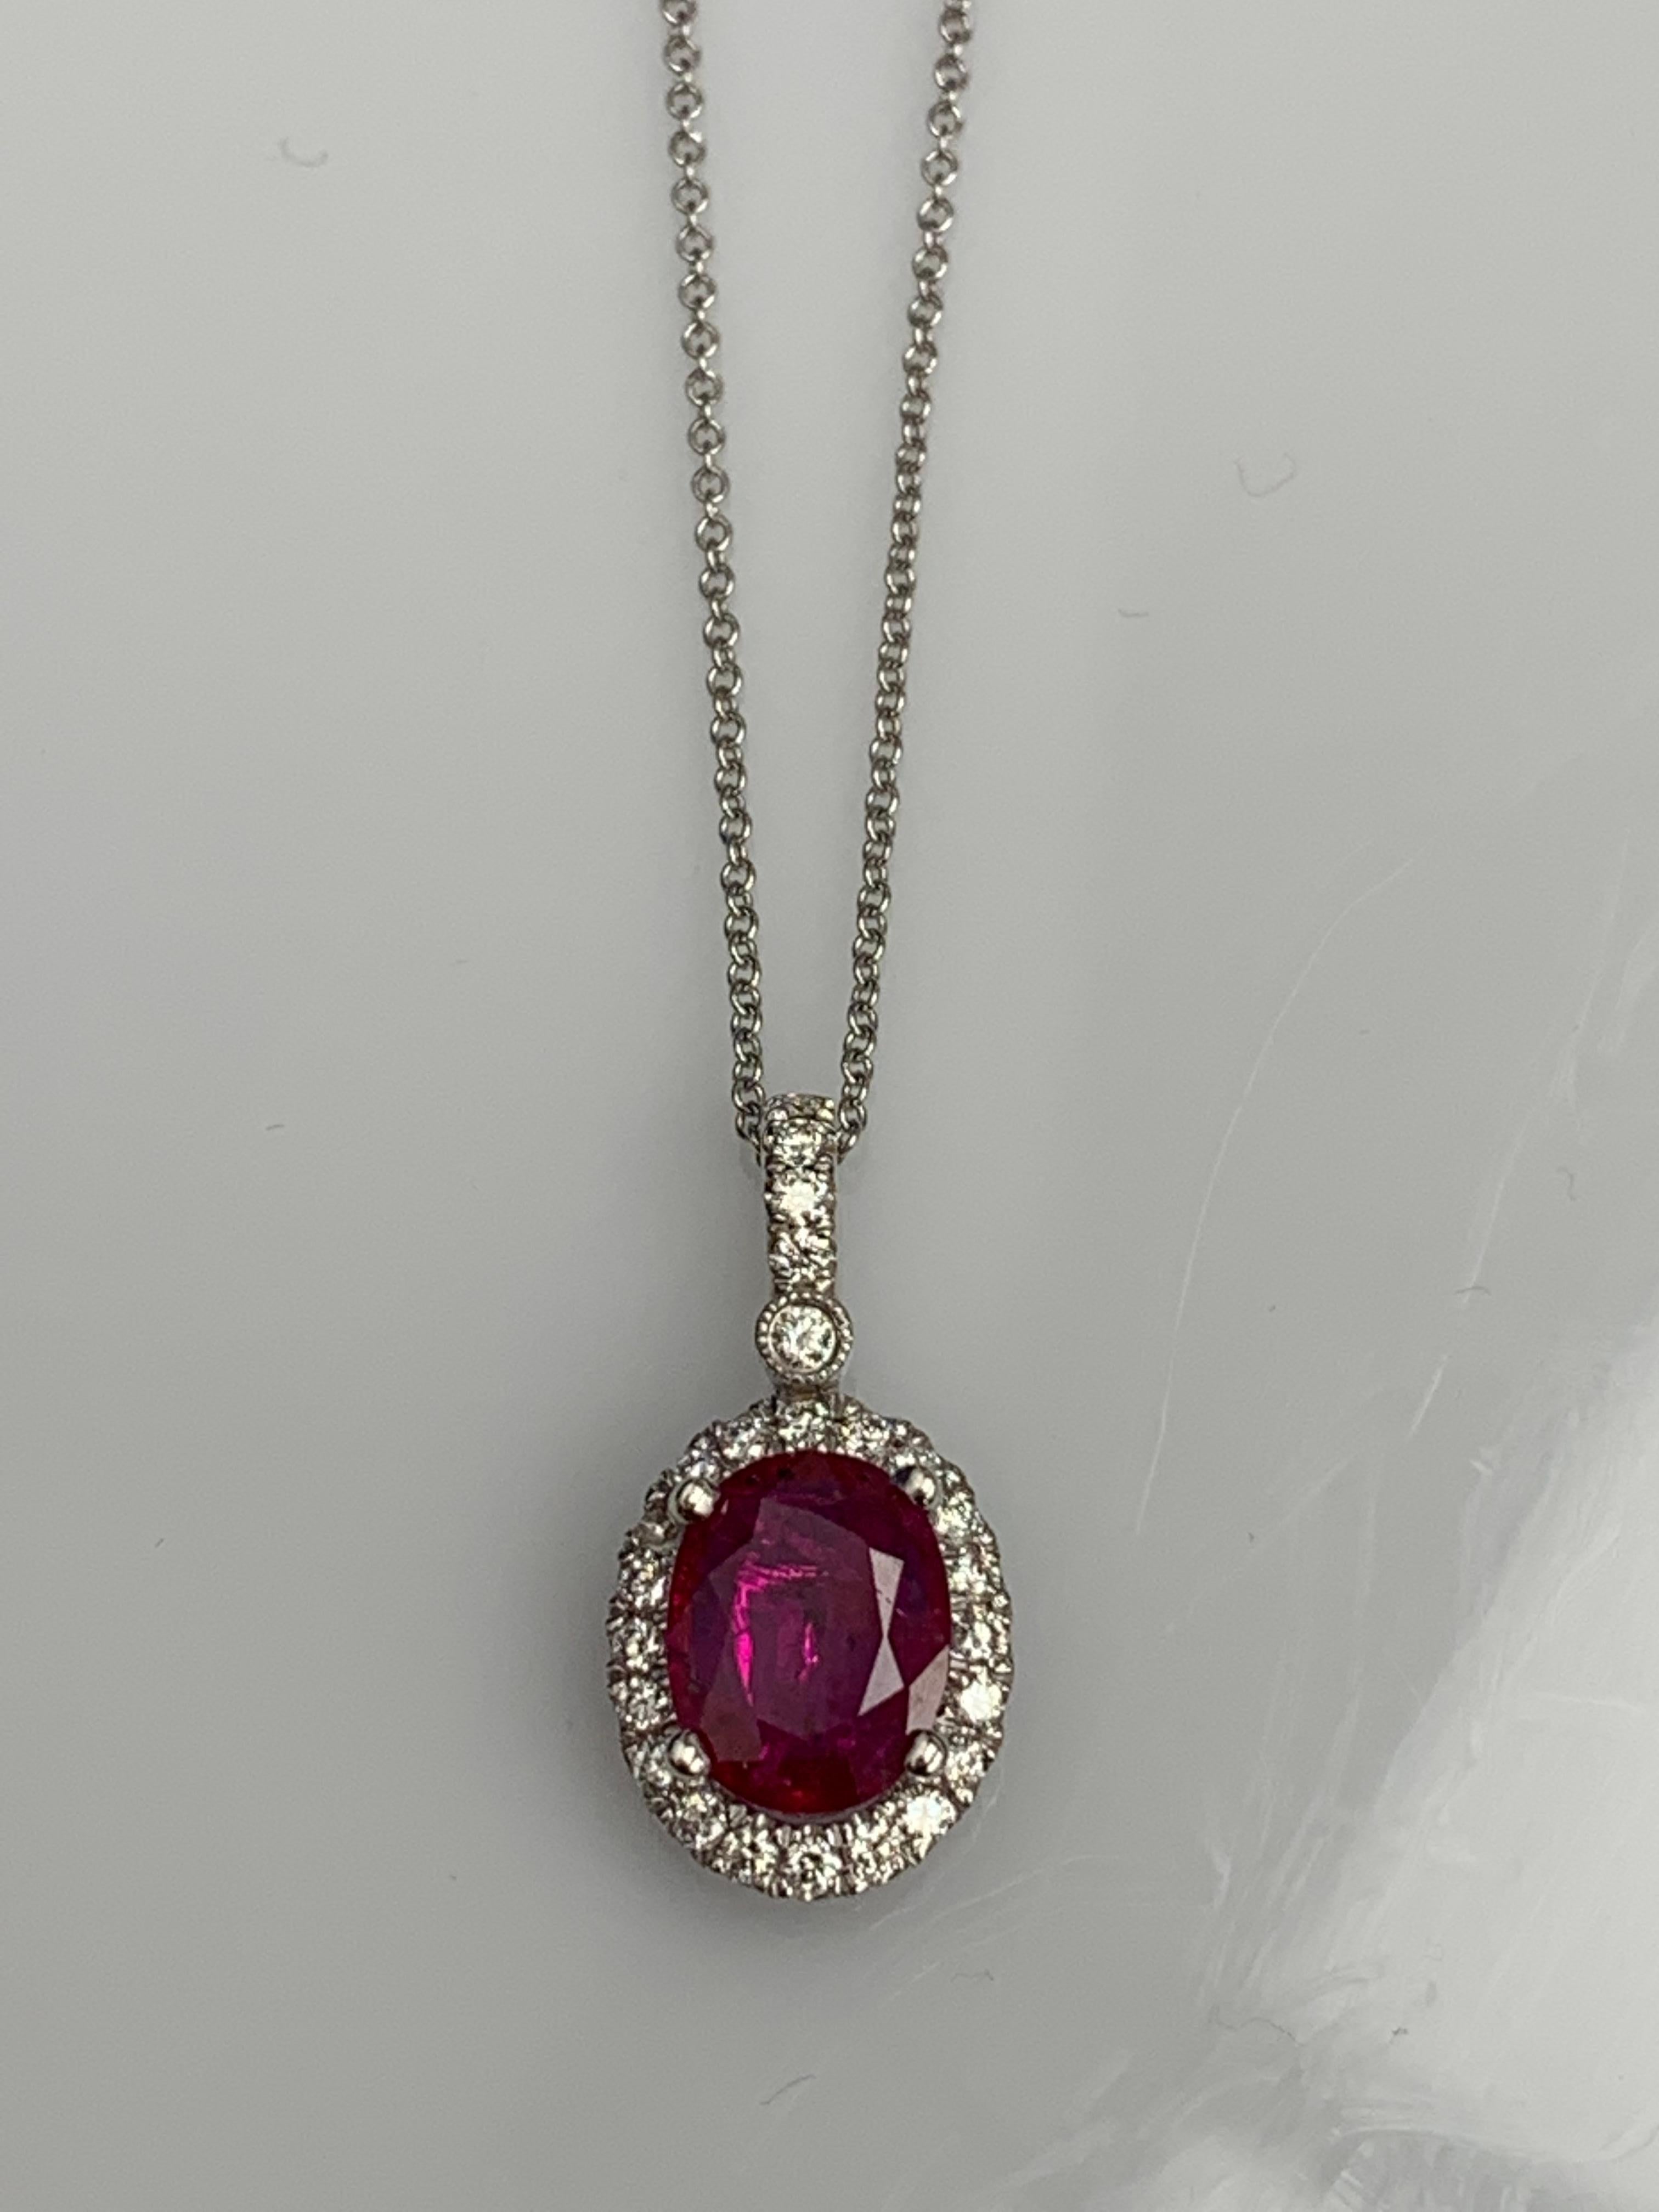 Eine schlichte Halskette mit einem leuchtenden roten Rubin von 2,10 Karat im Ovalschliff, umgeben von 
0,75 Karat aus 25 runden Diamanten. Hergestellt aus 18 Karat Weißgold.

Style ist in verschiedenen Preisklassen erhältlich. Die Preise basieren